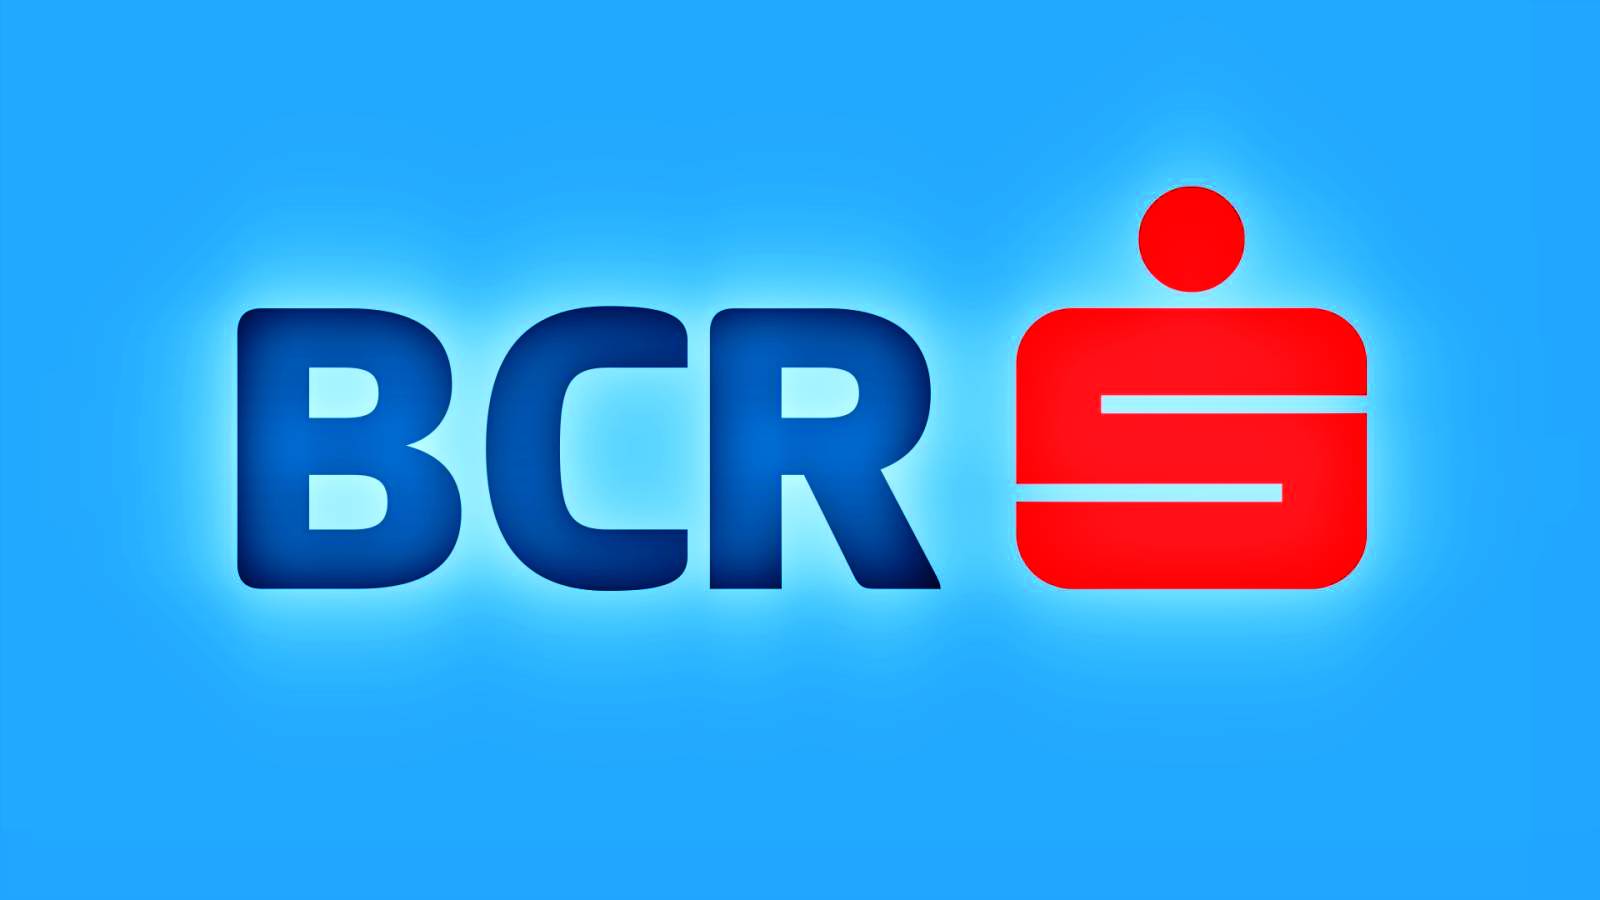 BCR Romania tastatur